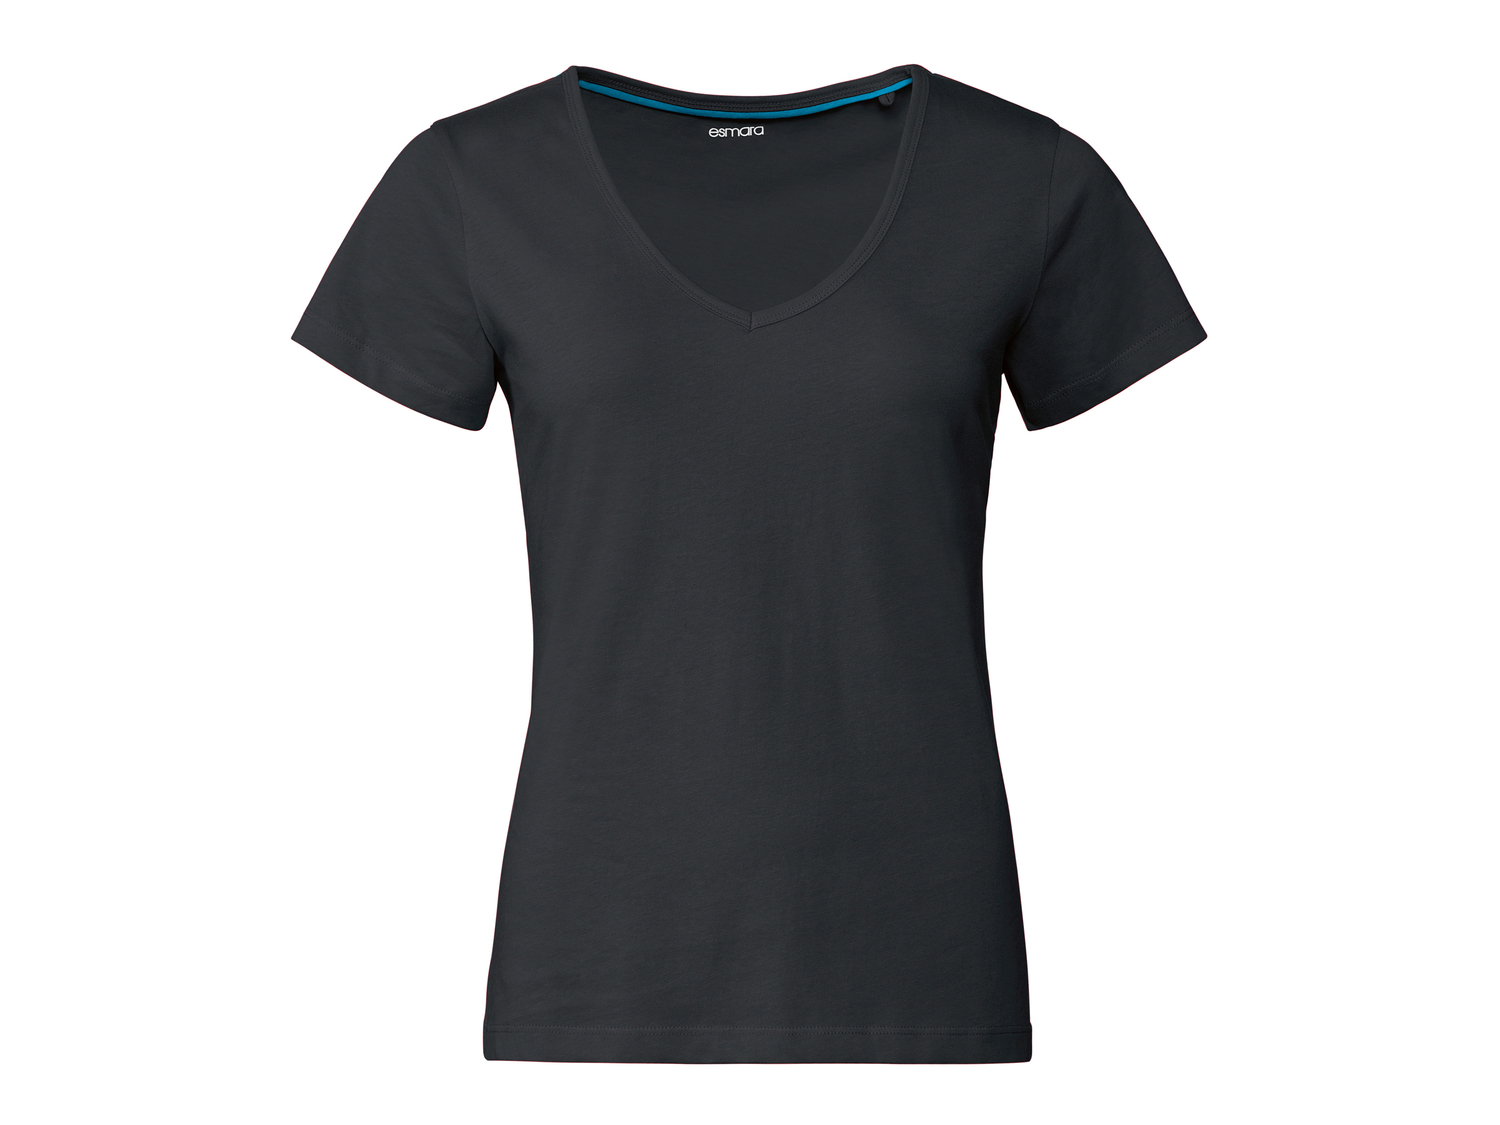 T-shirt da donna Esmara, prezzo 2.99 &#8364; 
Misure: S-XL 
- Puro cotone
Prodotto ...